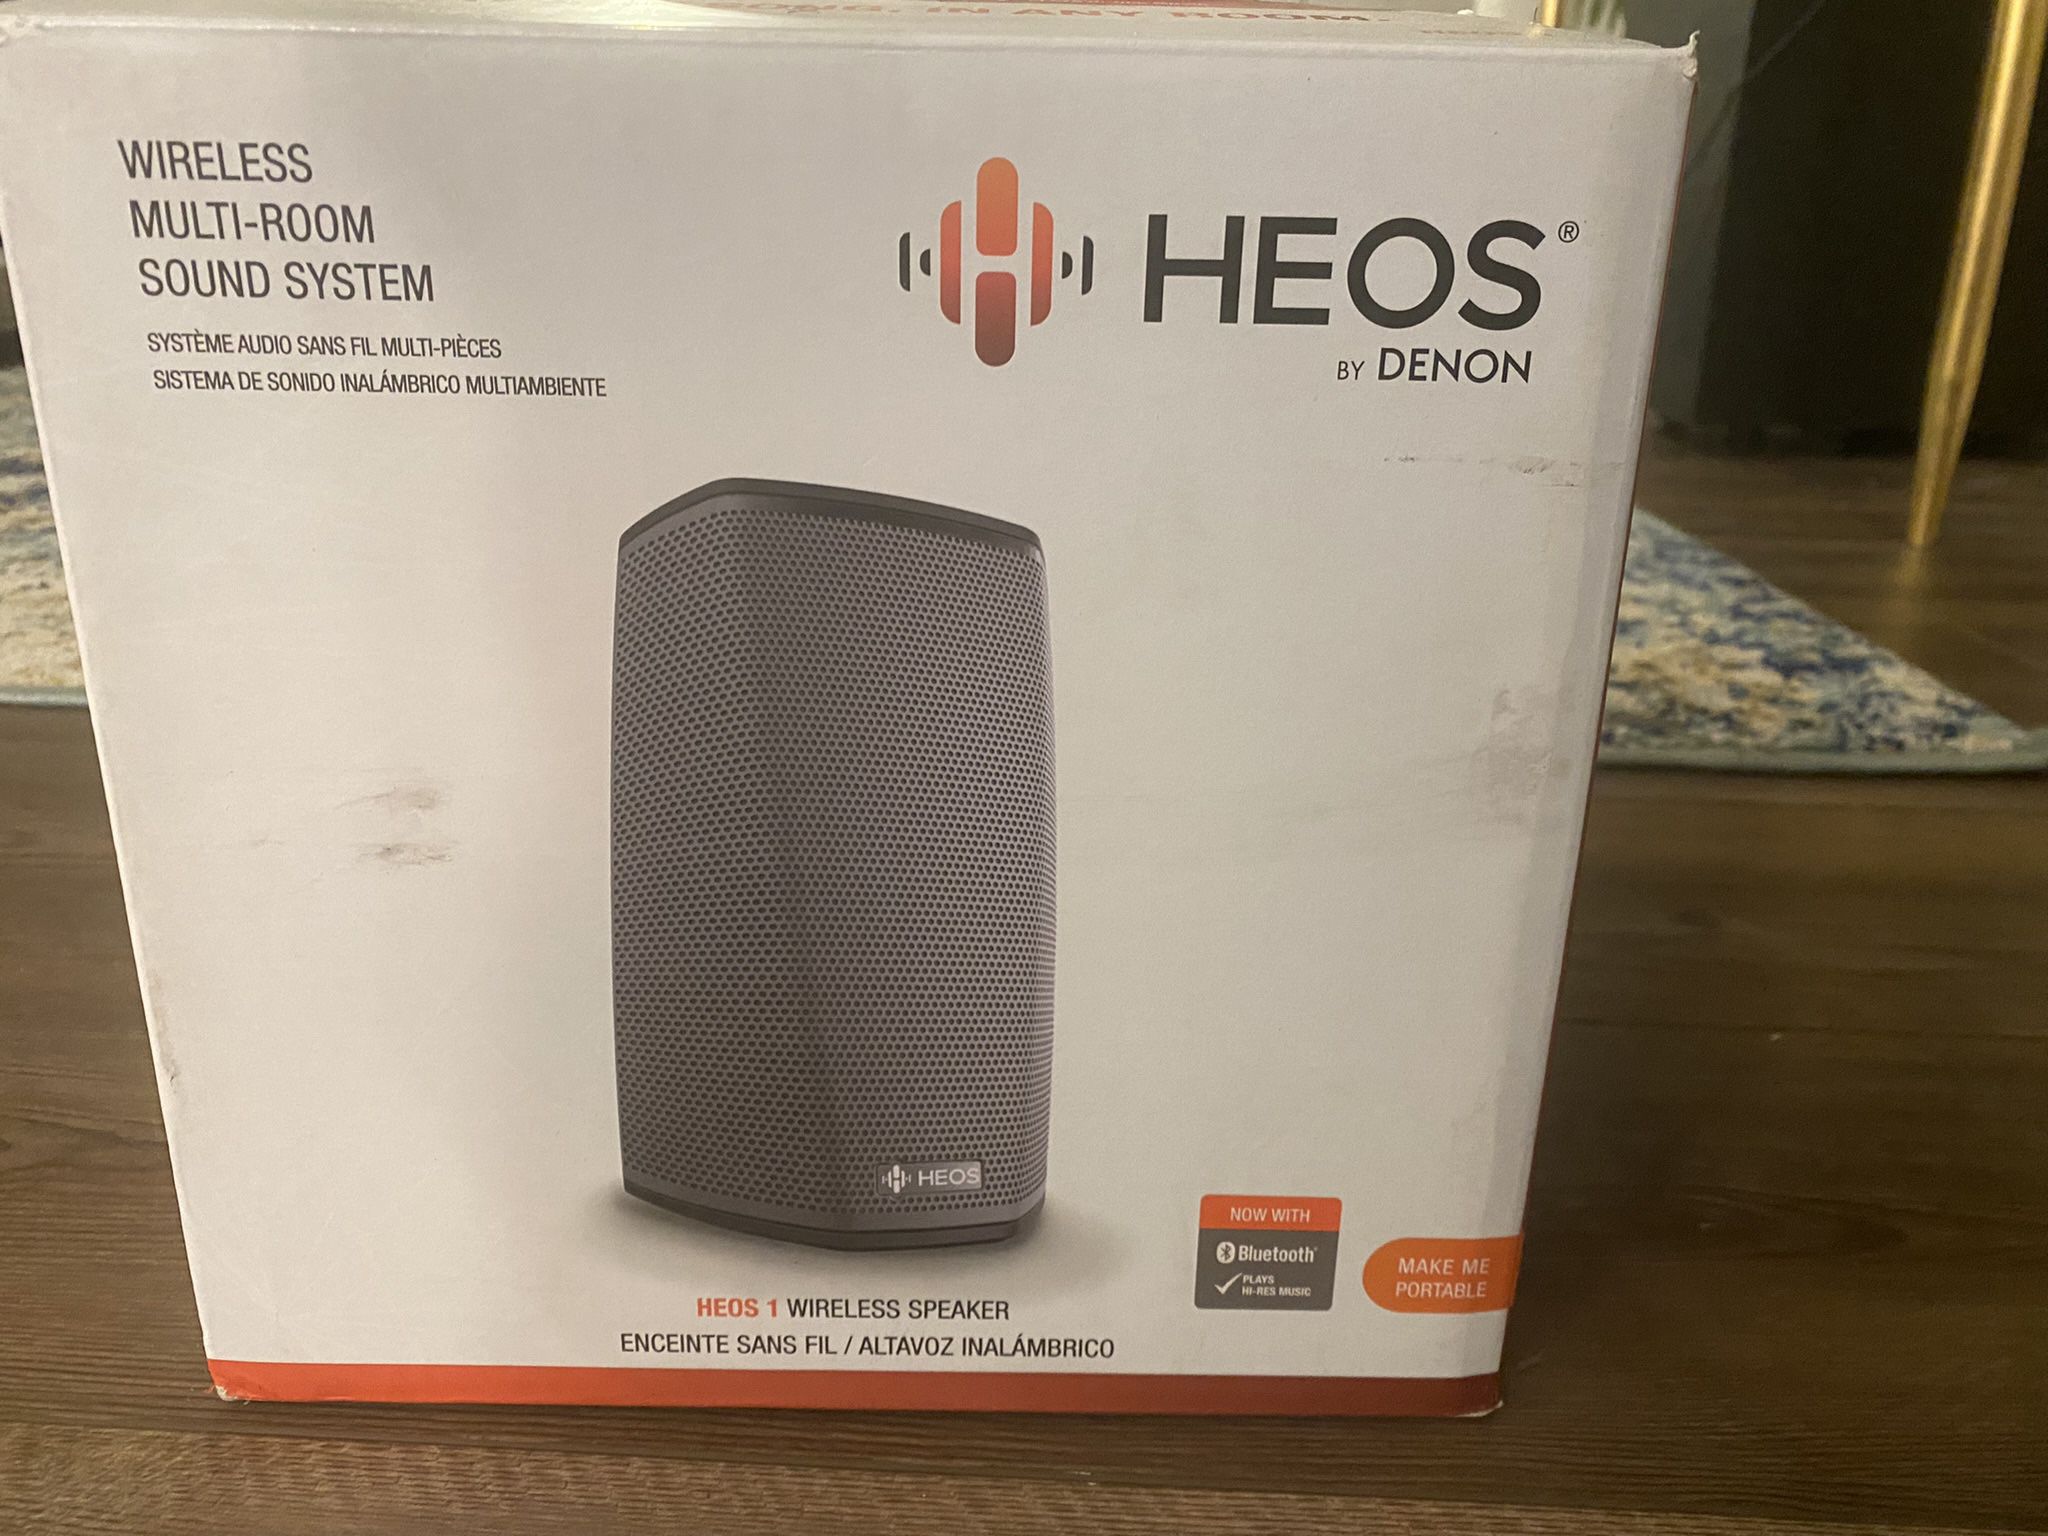 Heos 1 Multiroom Sound System 